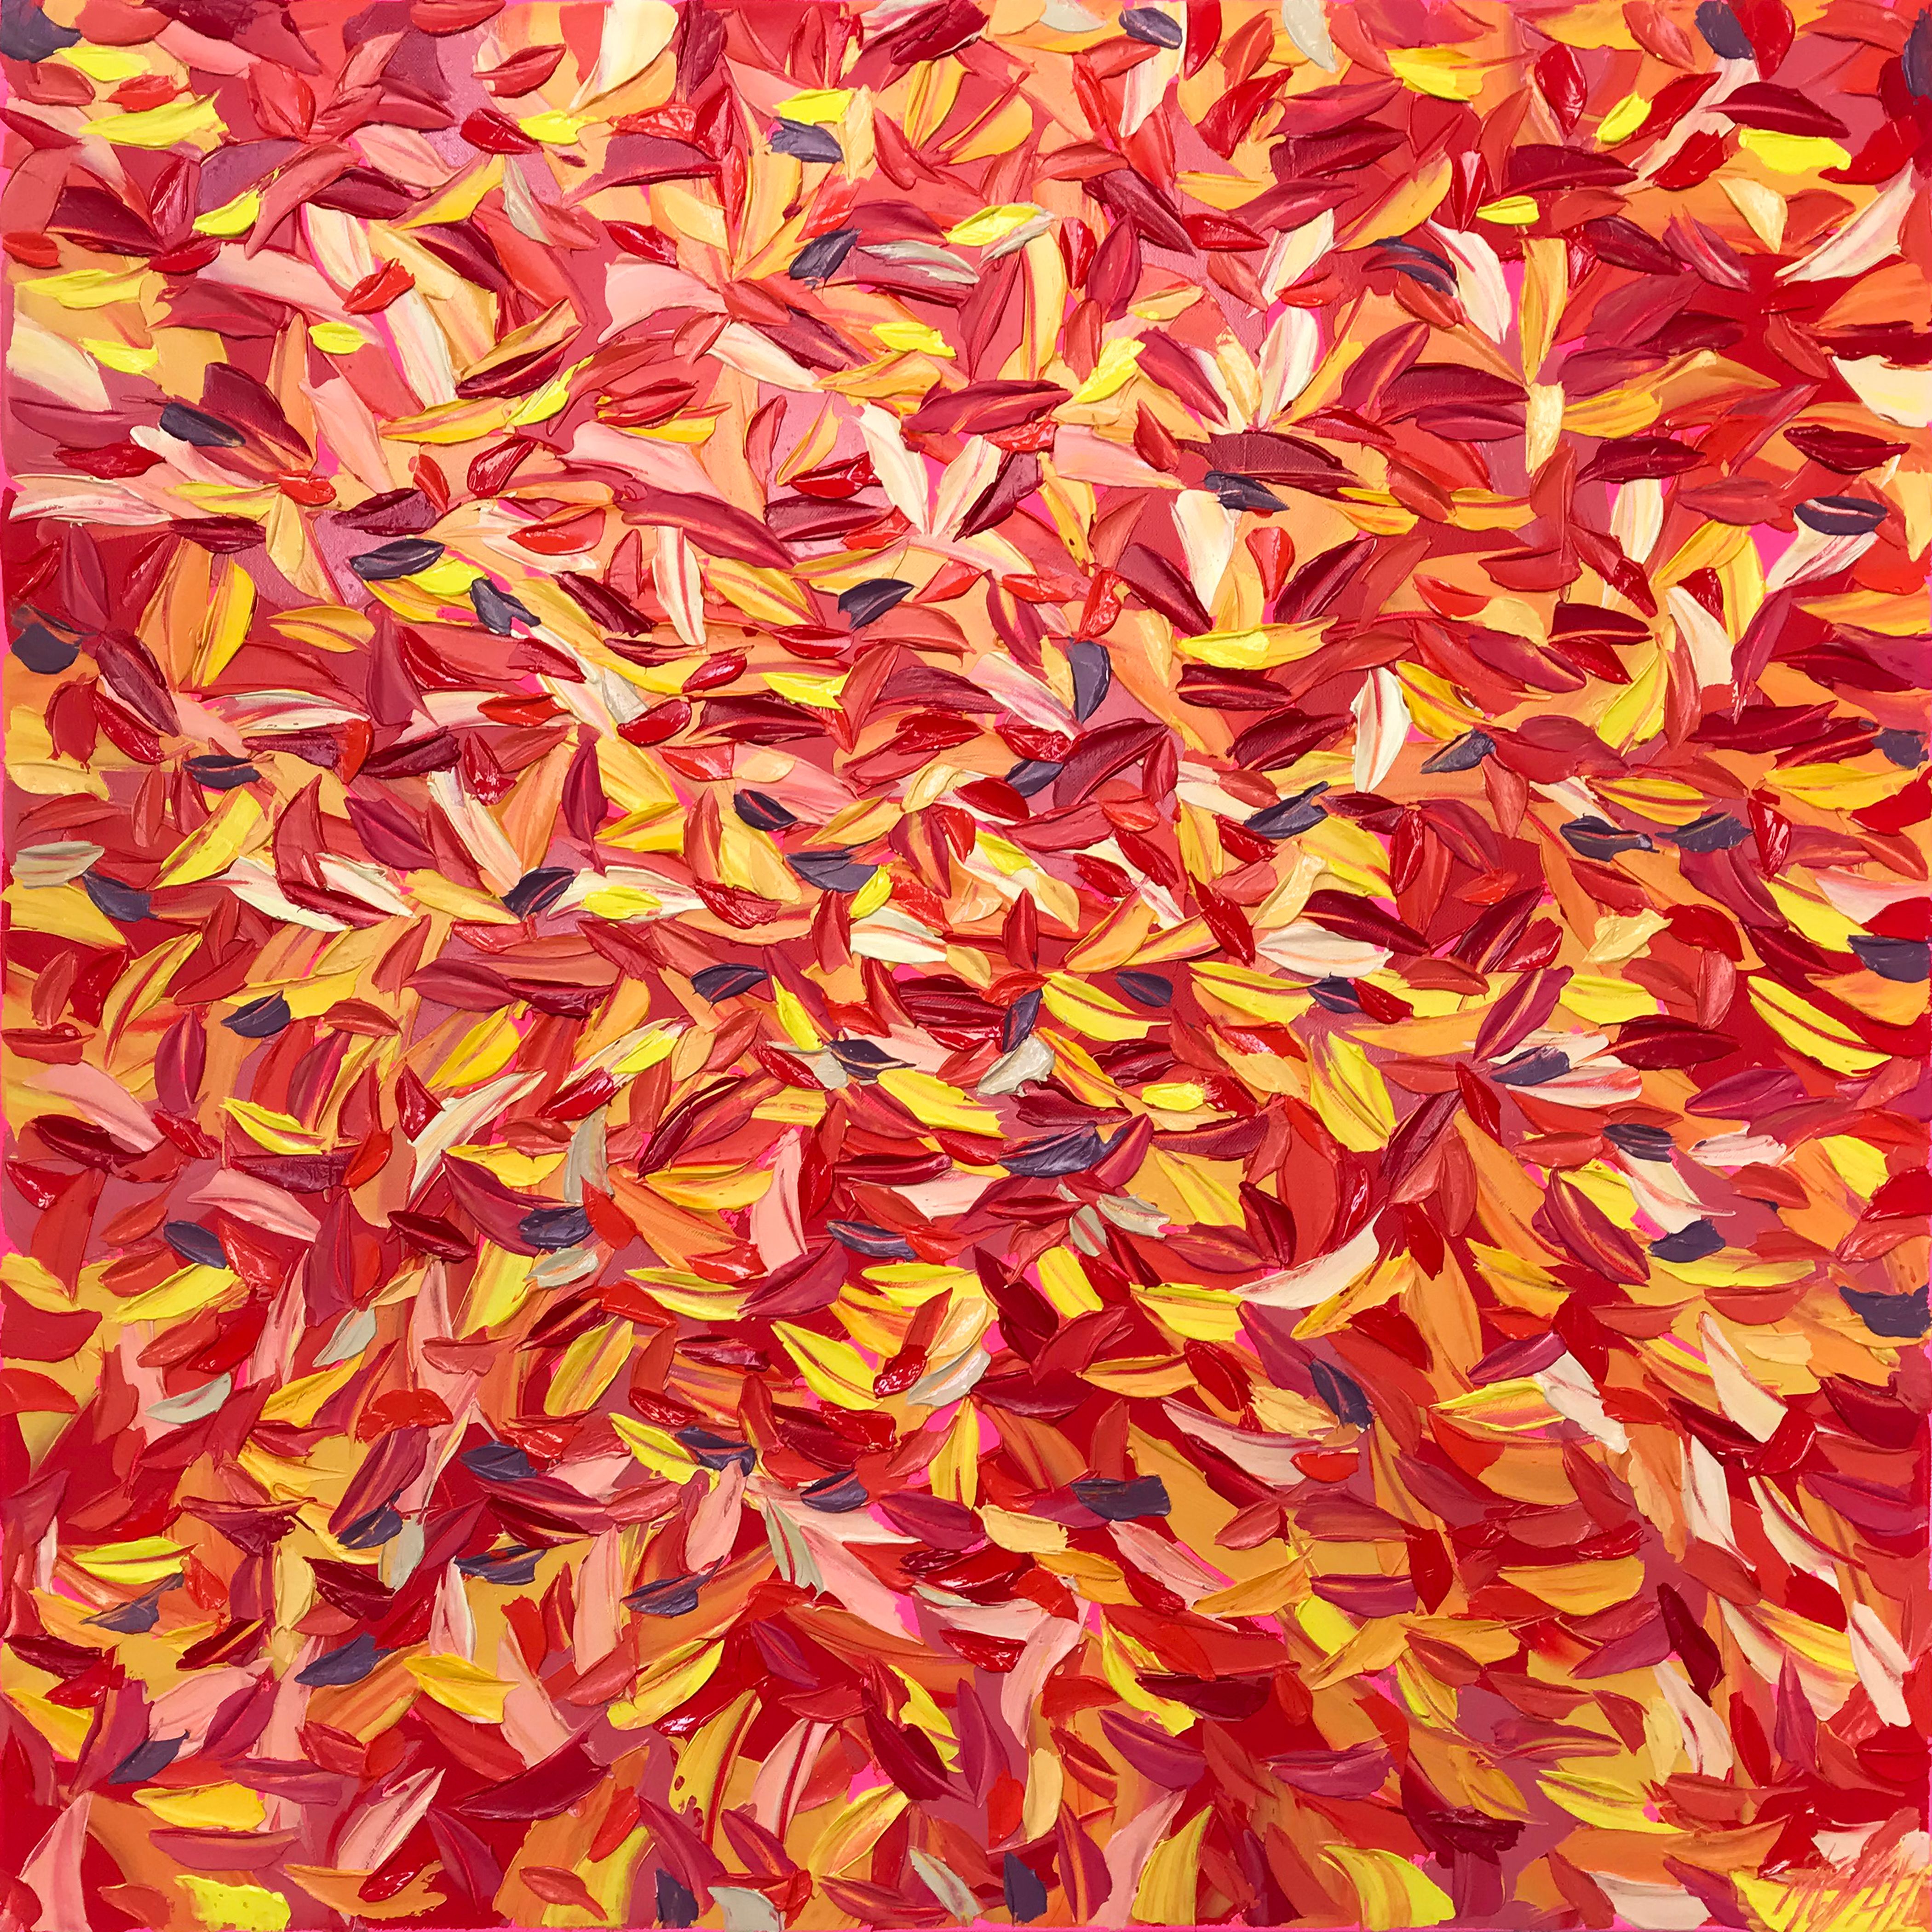 Pintura abstracta "Euforia" de Oliver Messa con hojas de colores